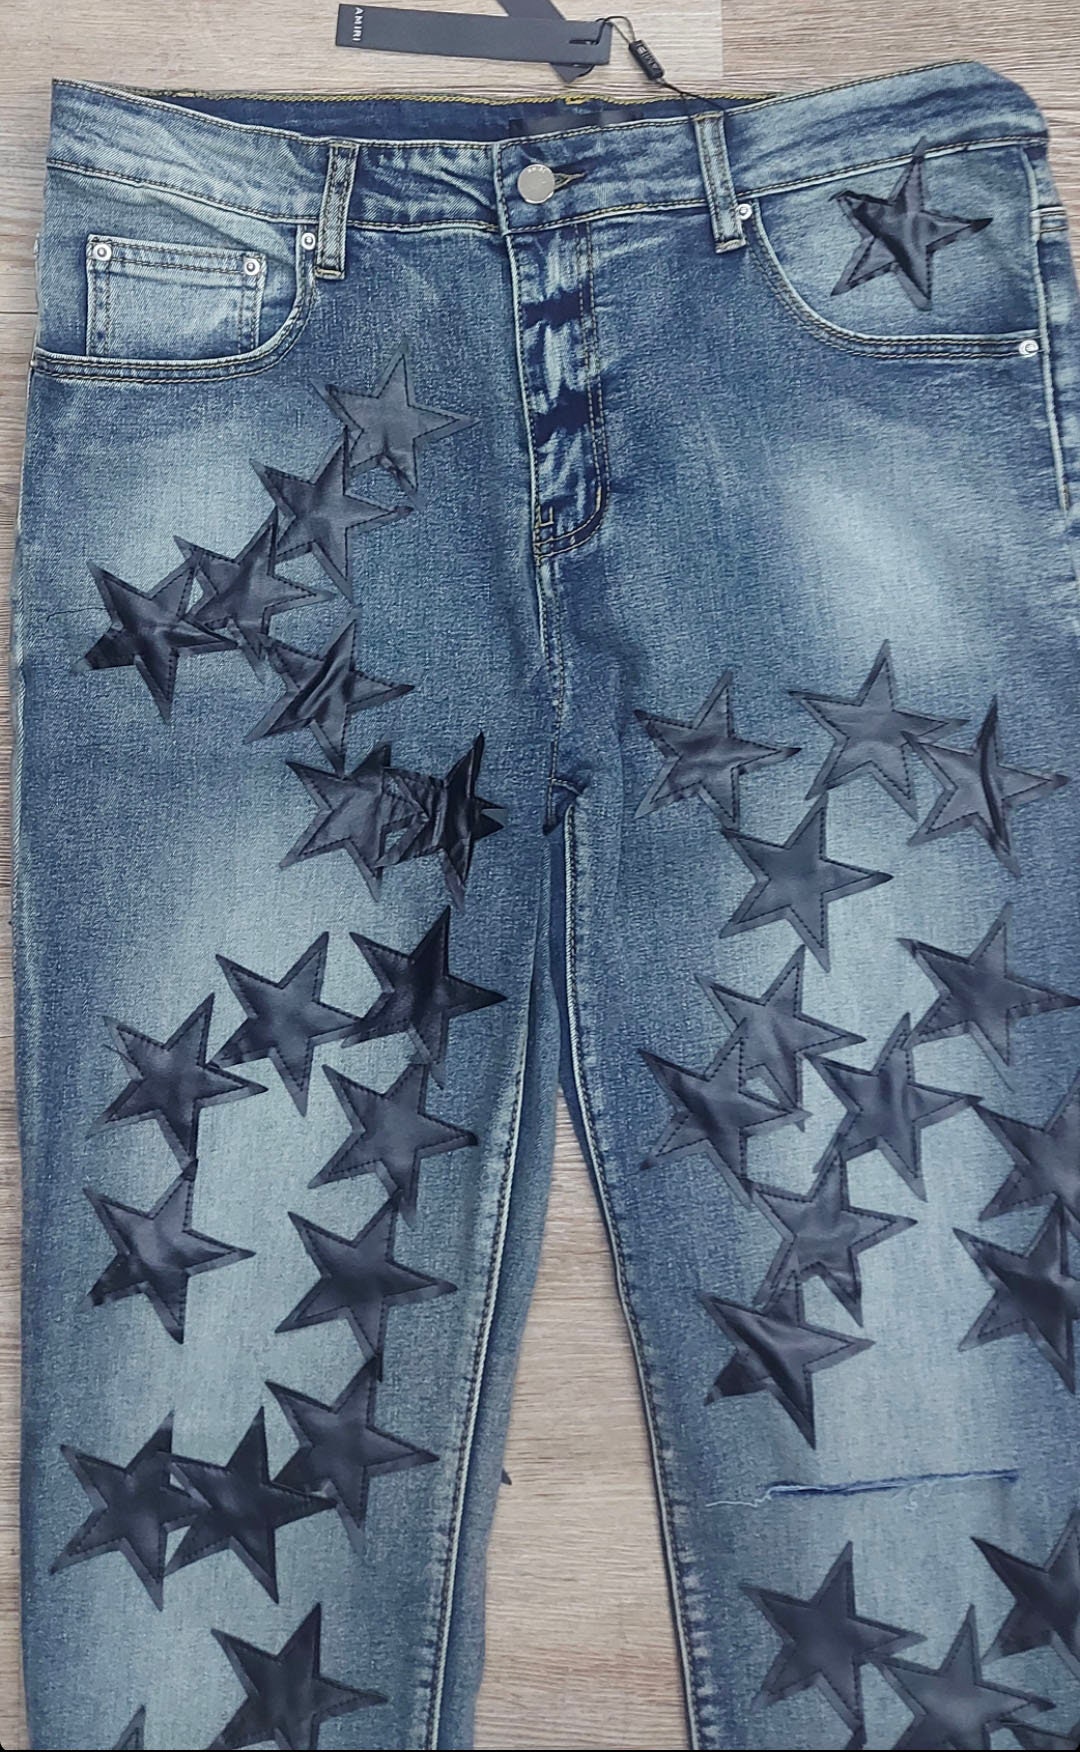 Vintagecustom Blue Denim Jeans With Black Star Detailing - Etsy